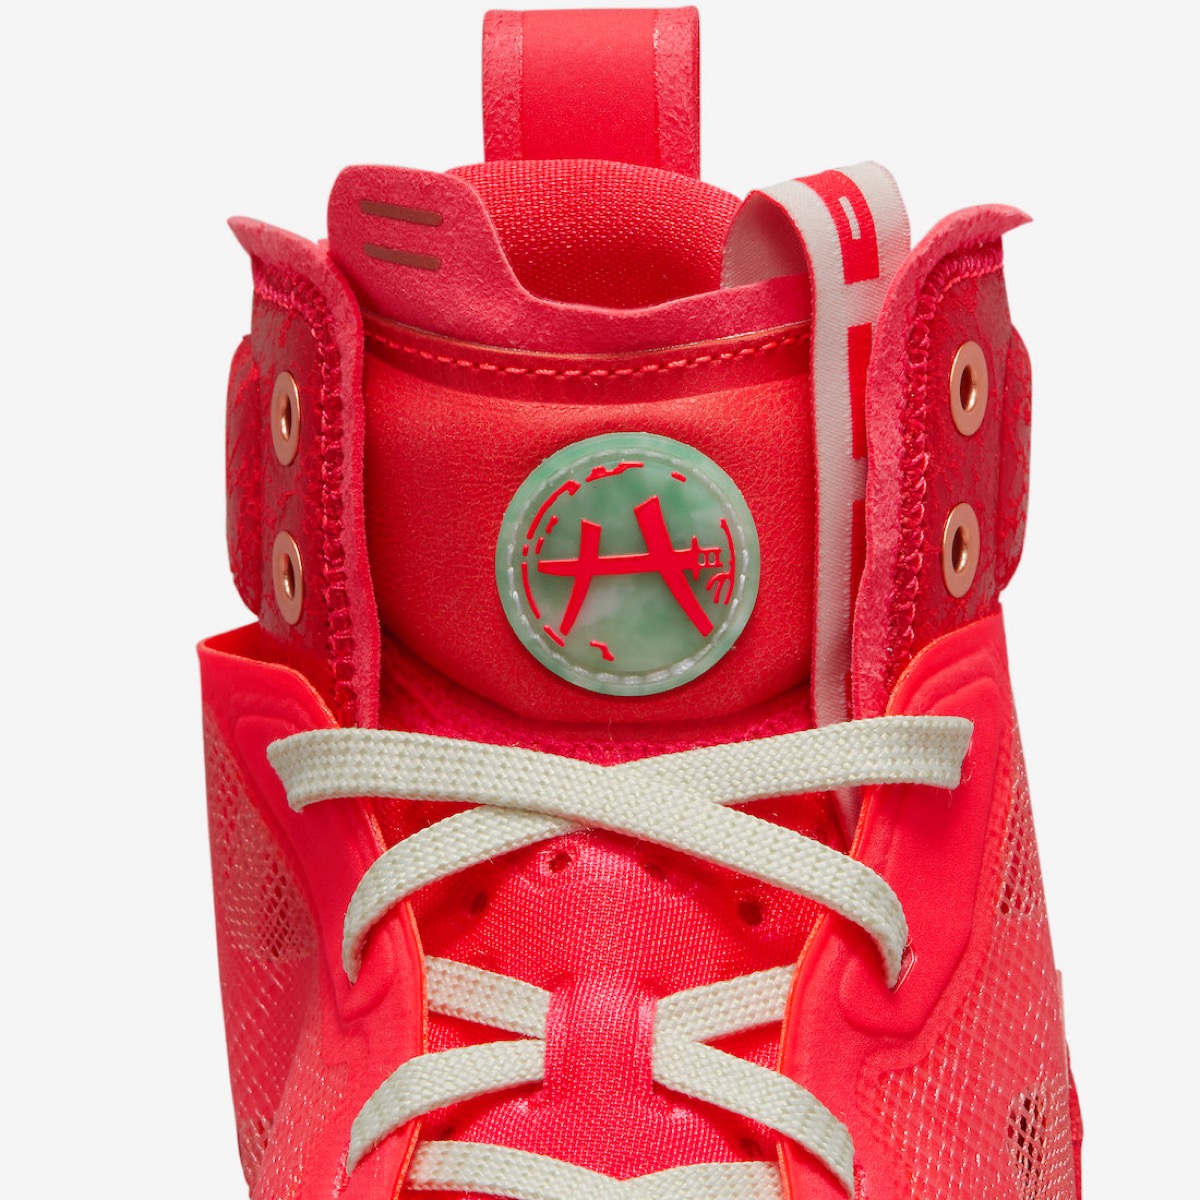 Rui Hachimura × Nike Air Jordan 37 “Siren Red”が国内12月8日に発売